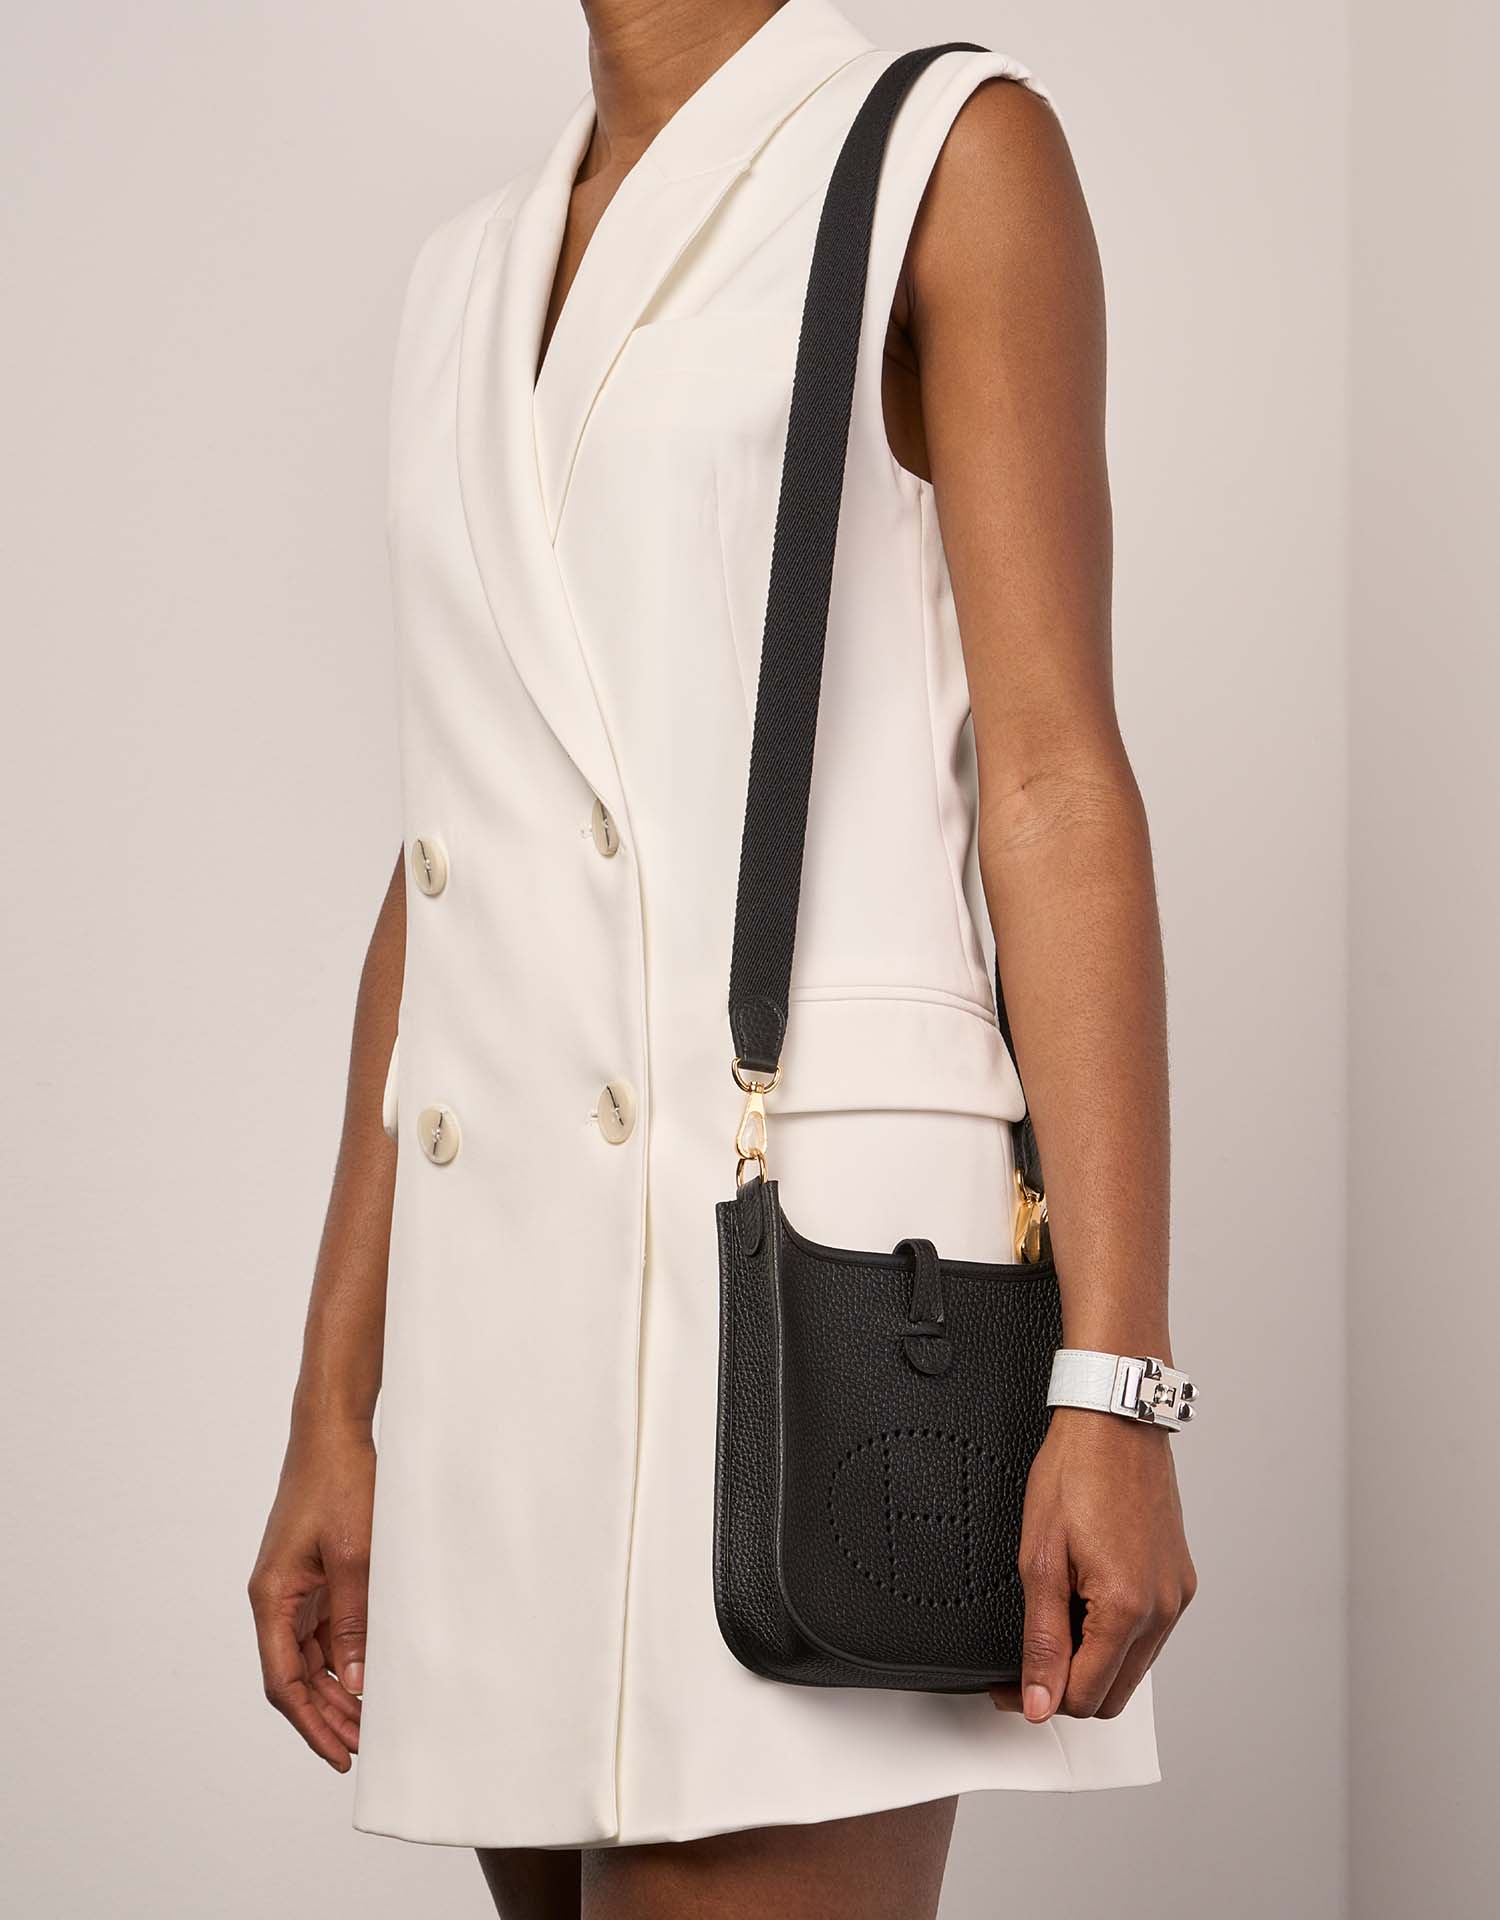 Hermès Evelyne 16 Black Sizes Worn | Sell your designer bag on Saclab.com